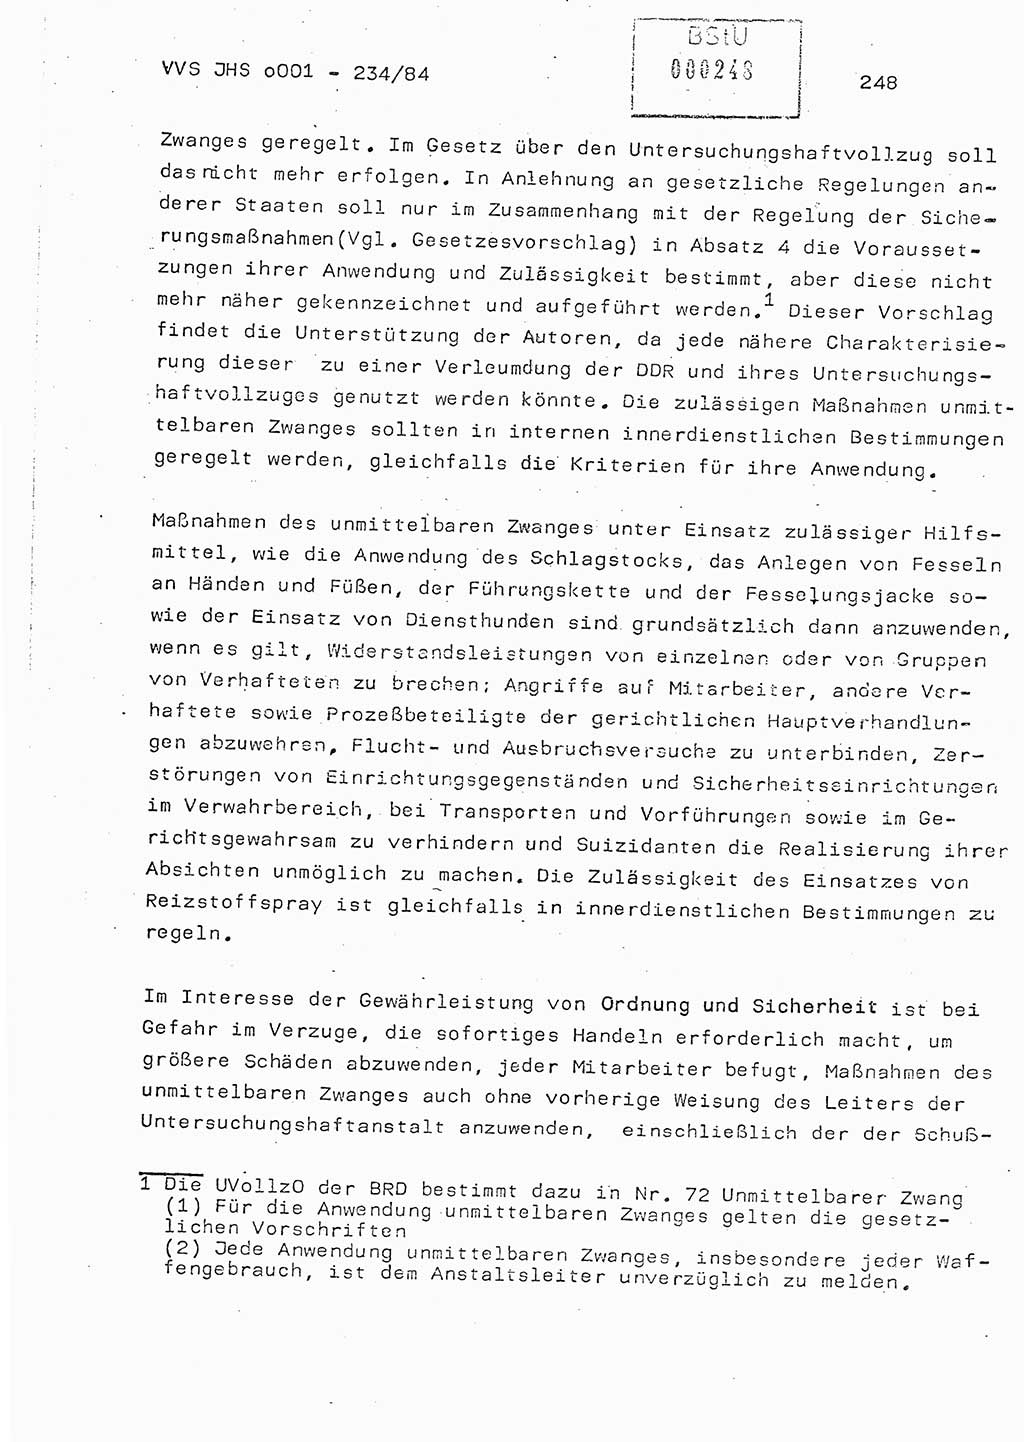 Dissertation Oberst Siegfried Rataizick (Abt. ⅩⅣ), Oberstleutnant Volkmar Heinz (Abt. ⅩⅣ), Oberstleutnant Werner Stein (HA Ⅸ), Hauptmann Heinz Conrad (JHS), Ministerium für Staatssicherheit (MfS) [Deutsche Demokratische Republik (DDR)], Juristische Hochschule (JHS), Vertrauliche Verschlußsache (VVS) o001-234/84, Potsdam 1984, Seite 248 (Diss. MfS DDR JHS VVS o001-234/84 1984, S. 248)